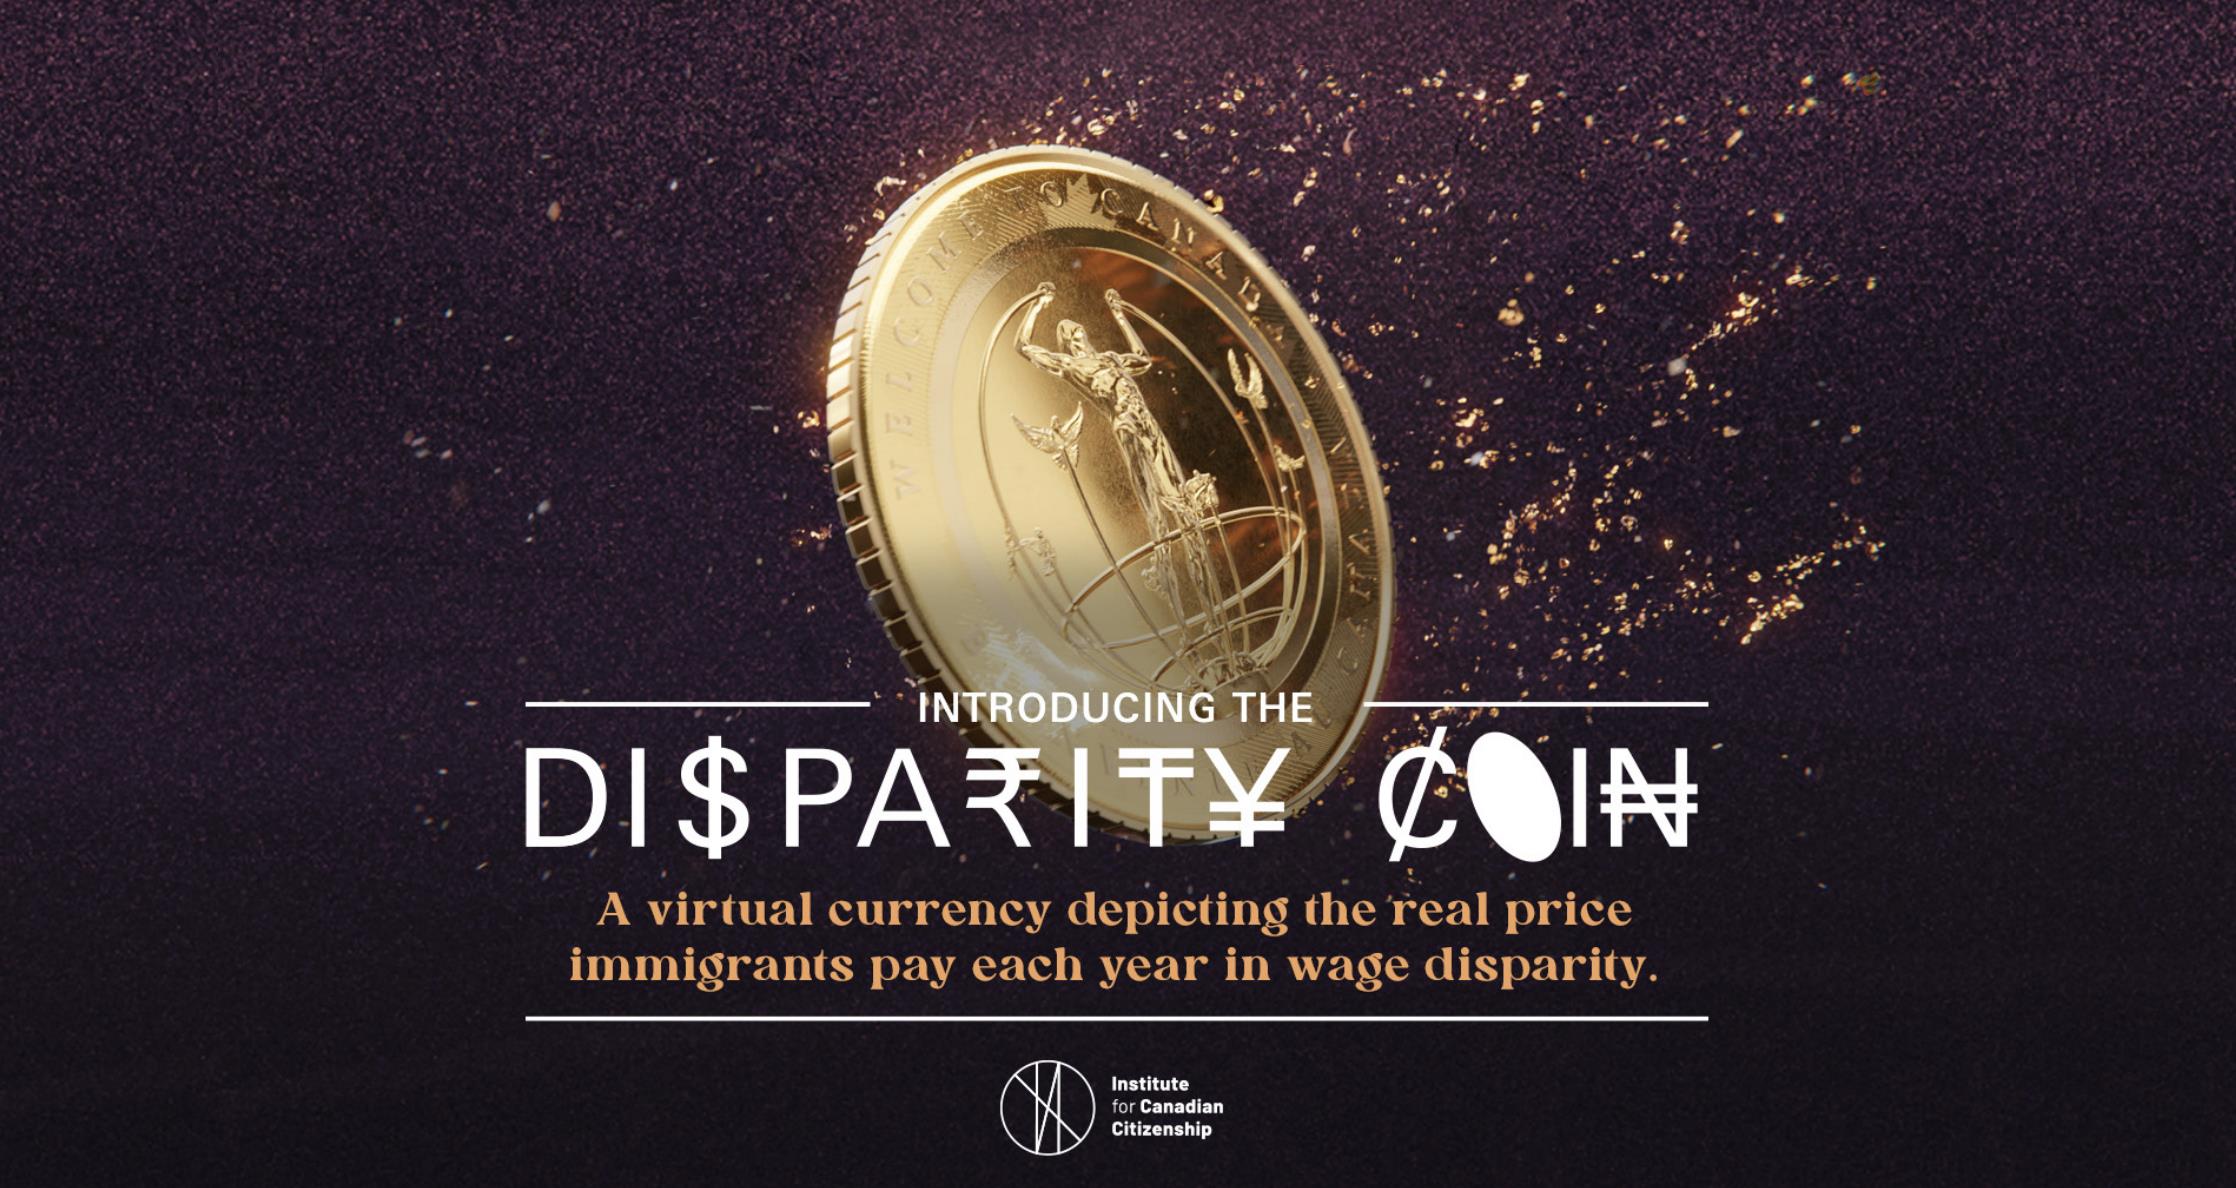 Disparity Coin